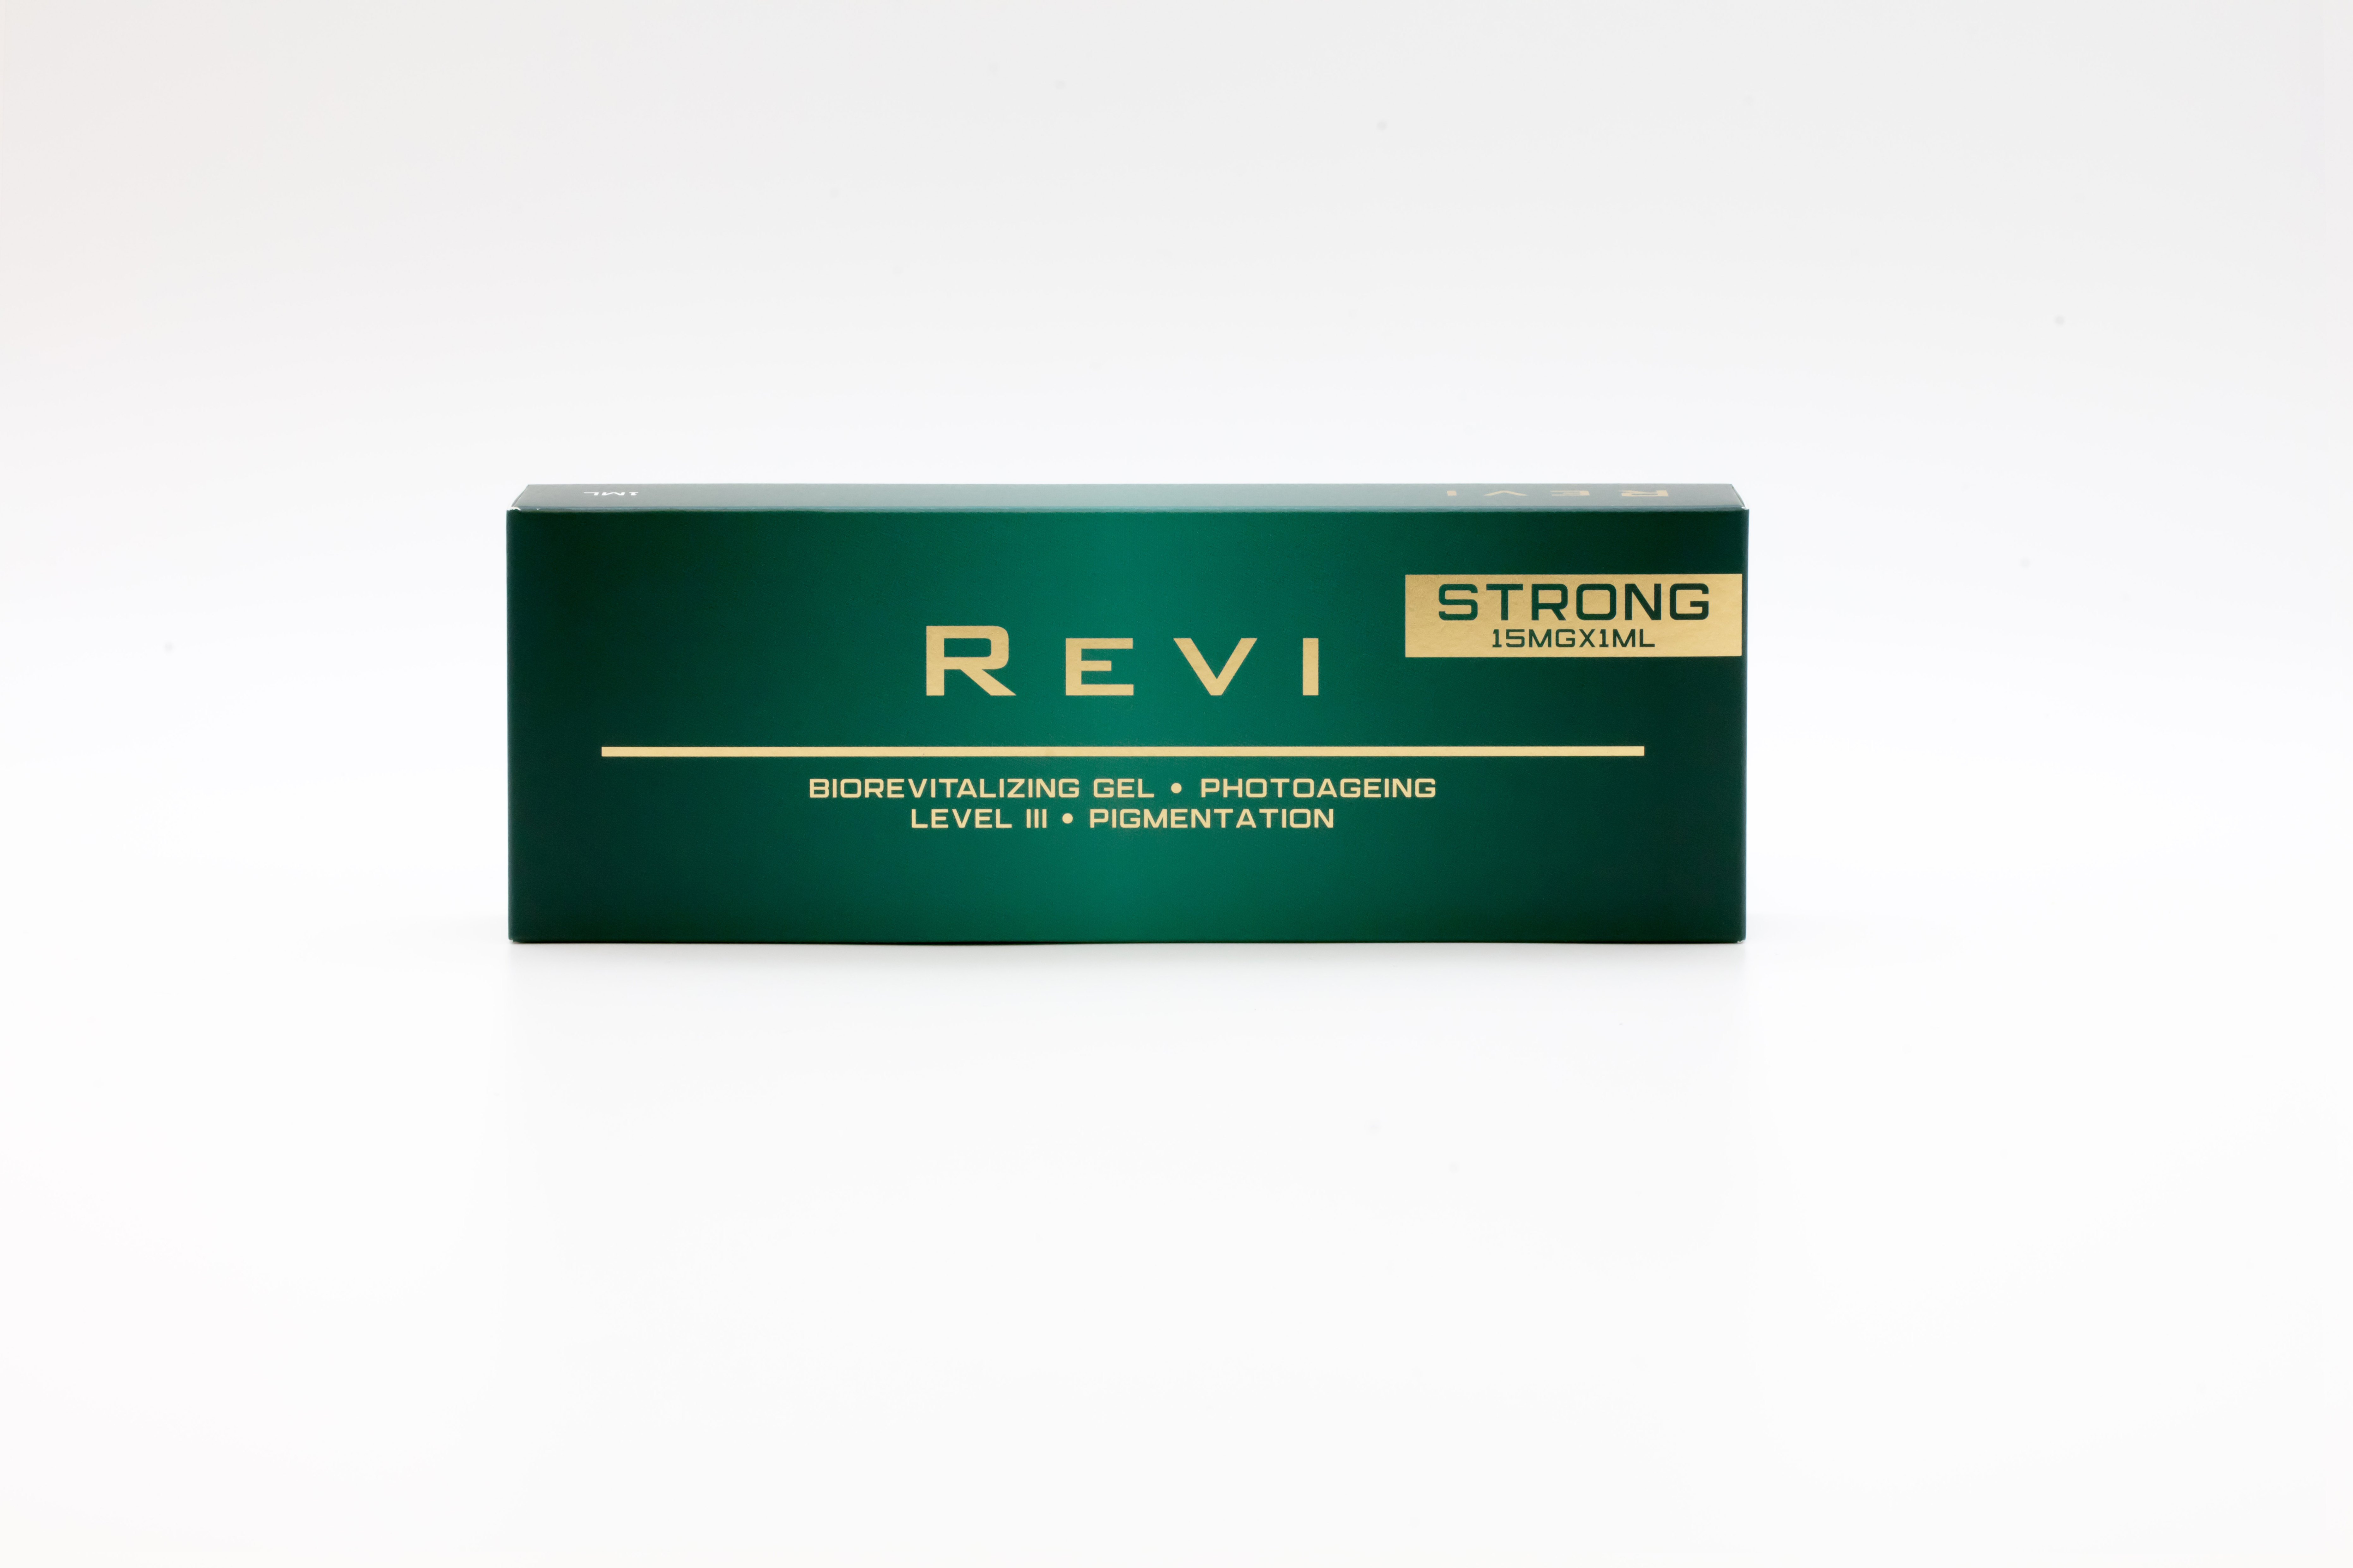 Биоревитализация внутрикожное введение препарата «REVI» strong  (2 мл. шприц)